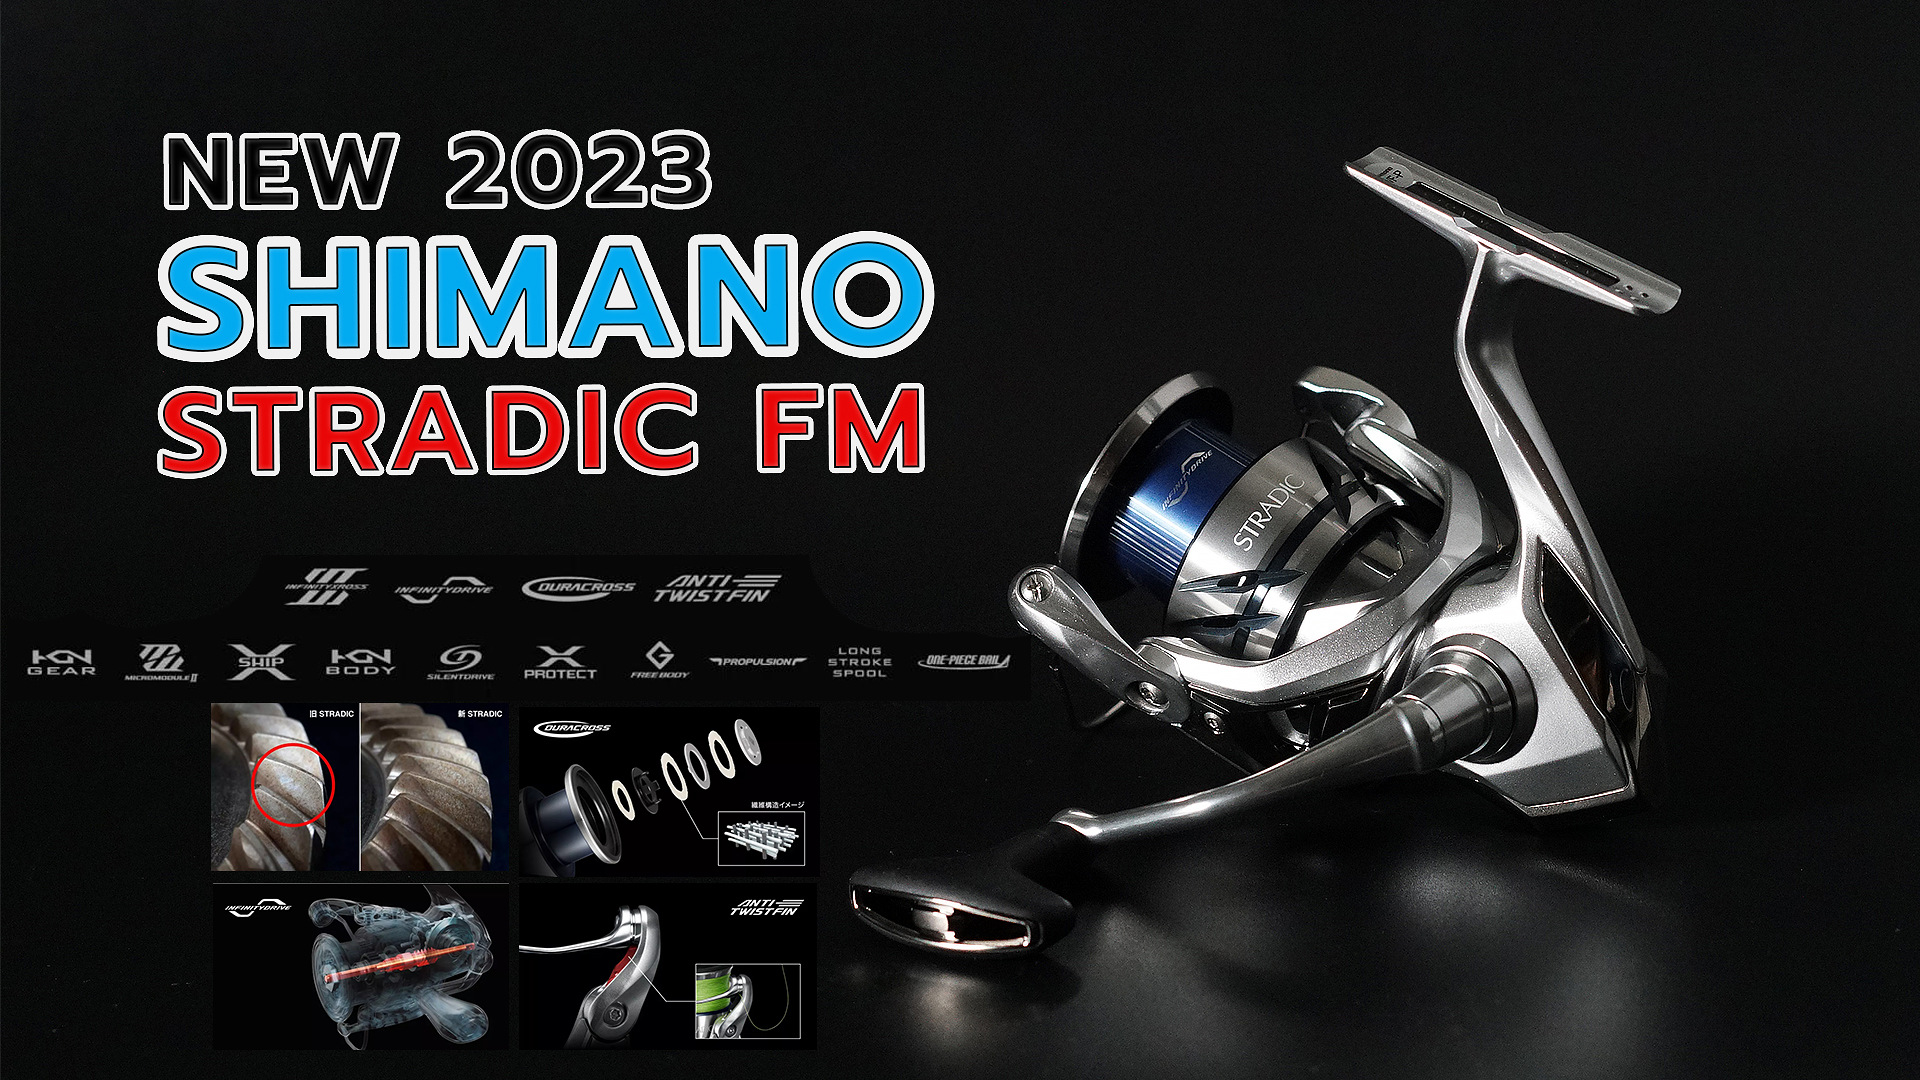 สิ้นสุดการรอคอย รีวิวผ่ารอก Shimano stradic FM 2023 แบบเจาะลึกทุกรายละเอียด 